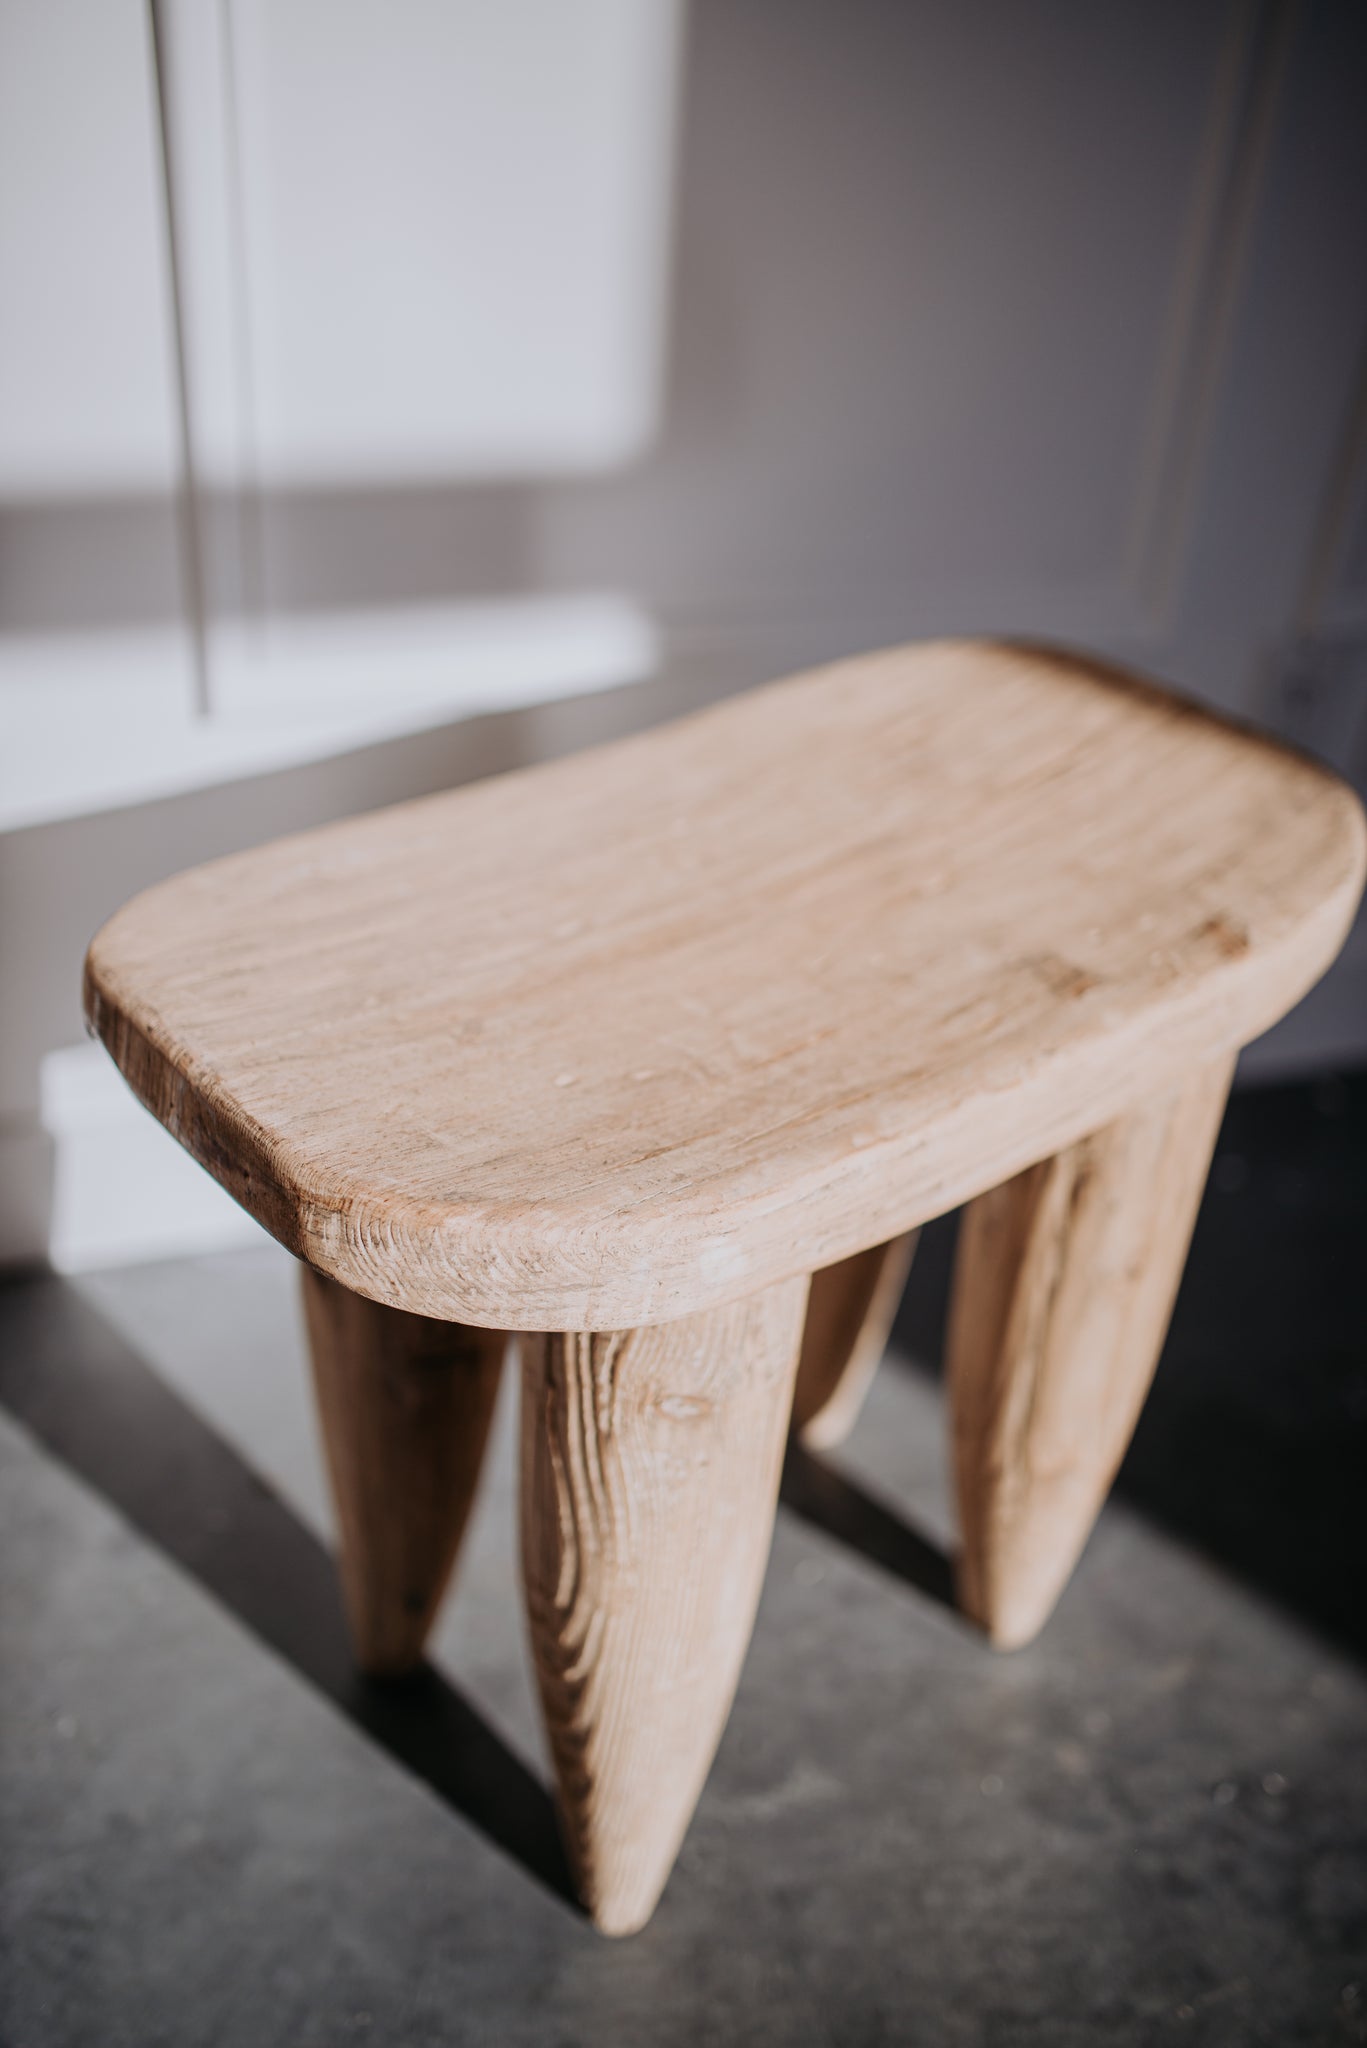 Senufo stools